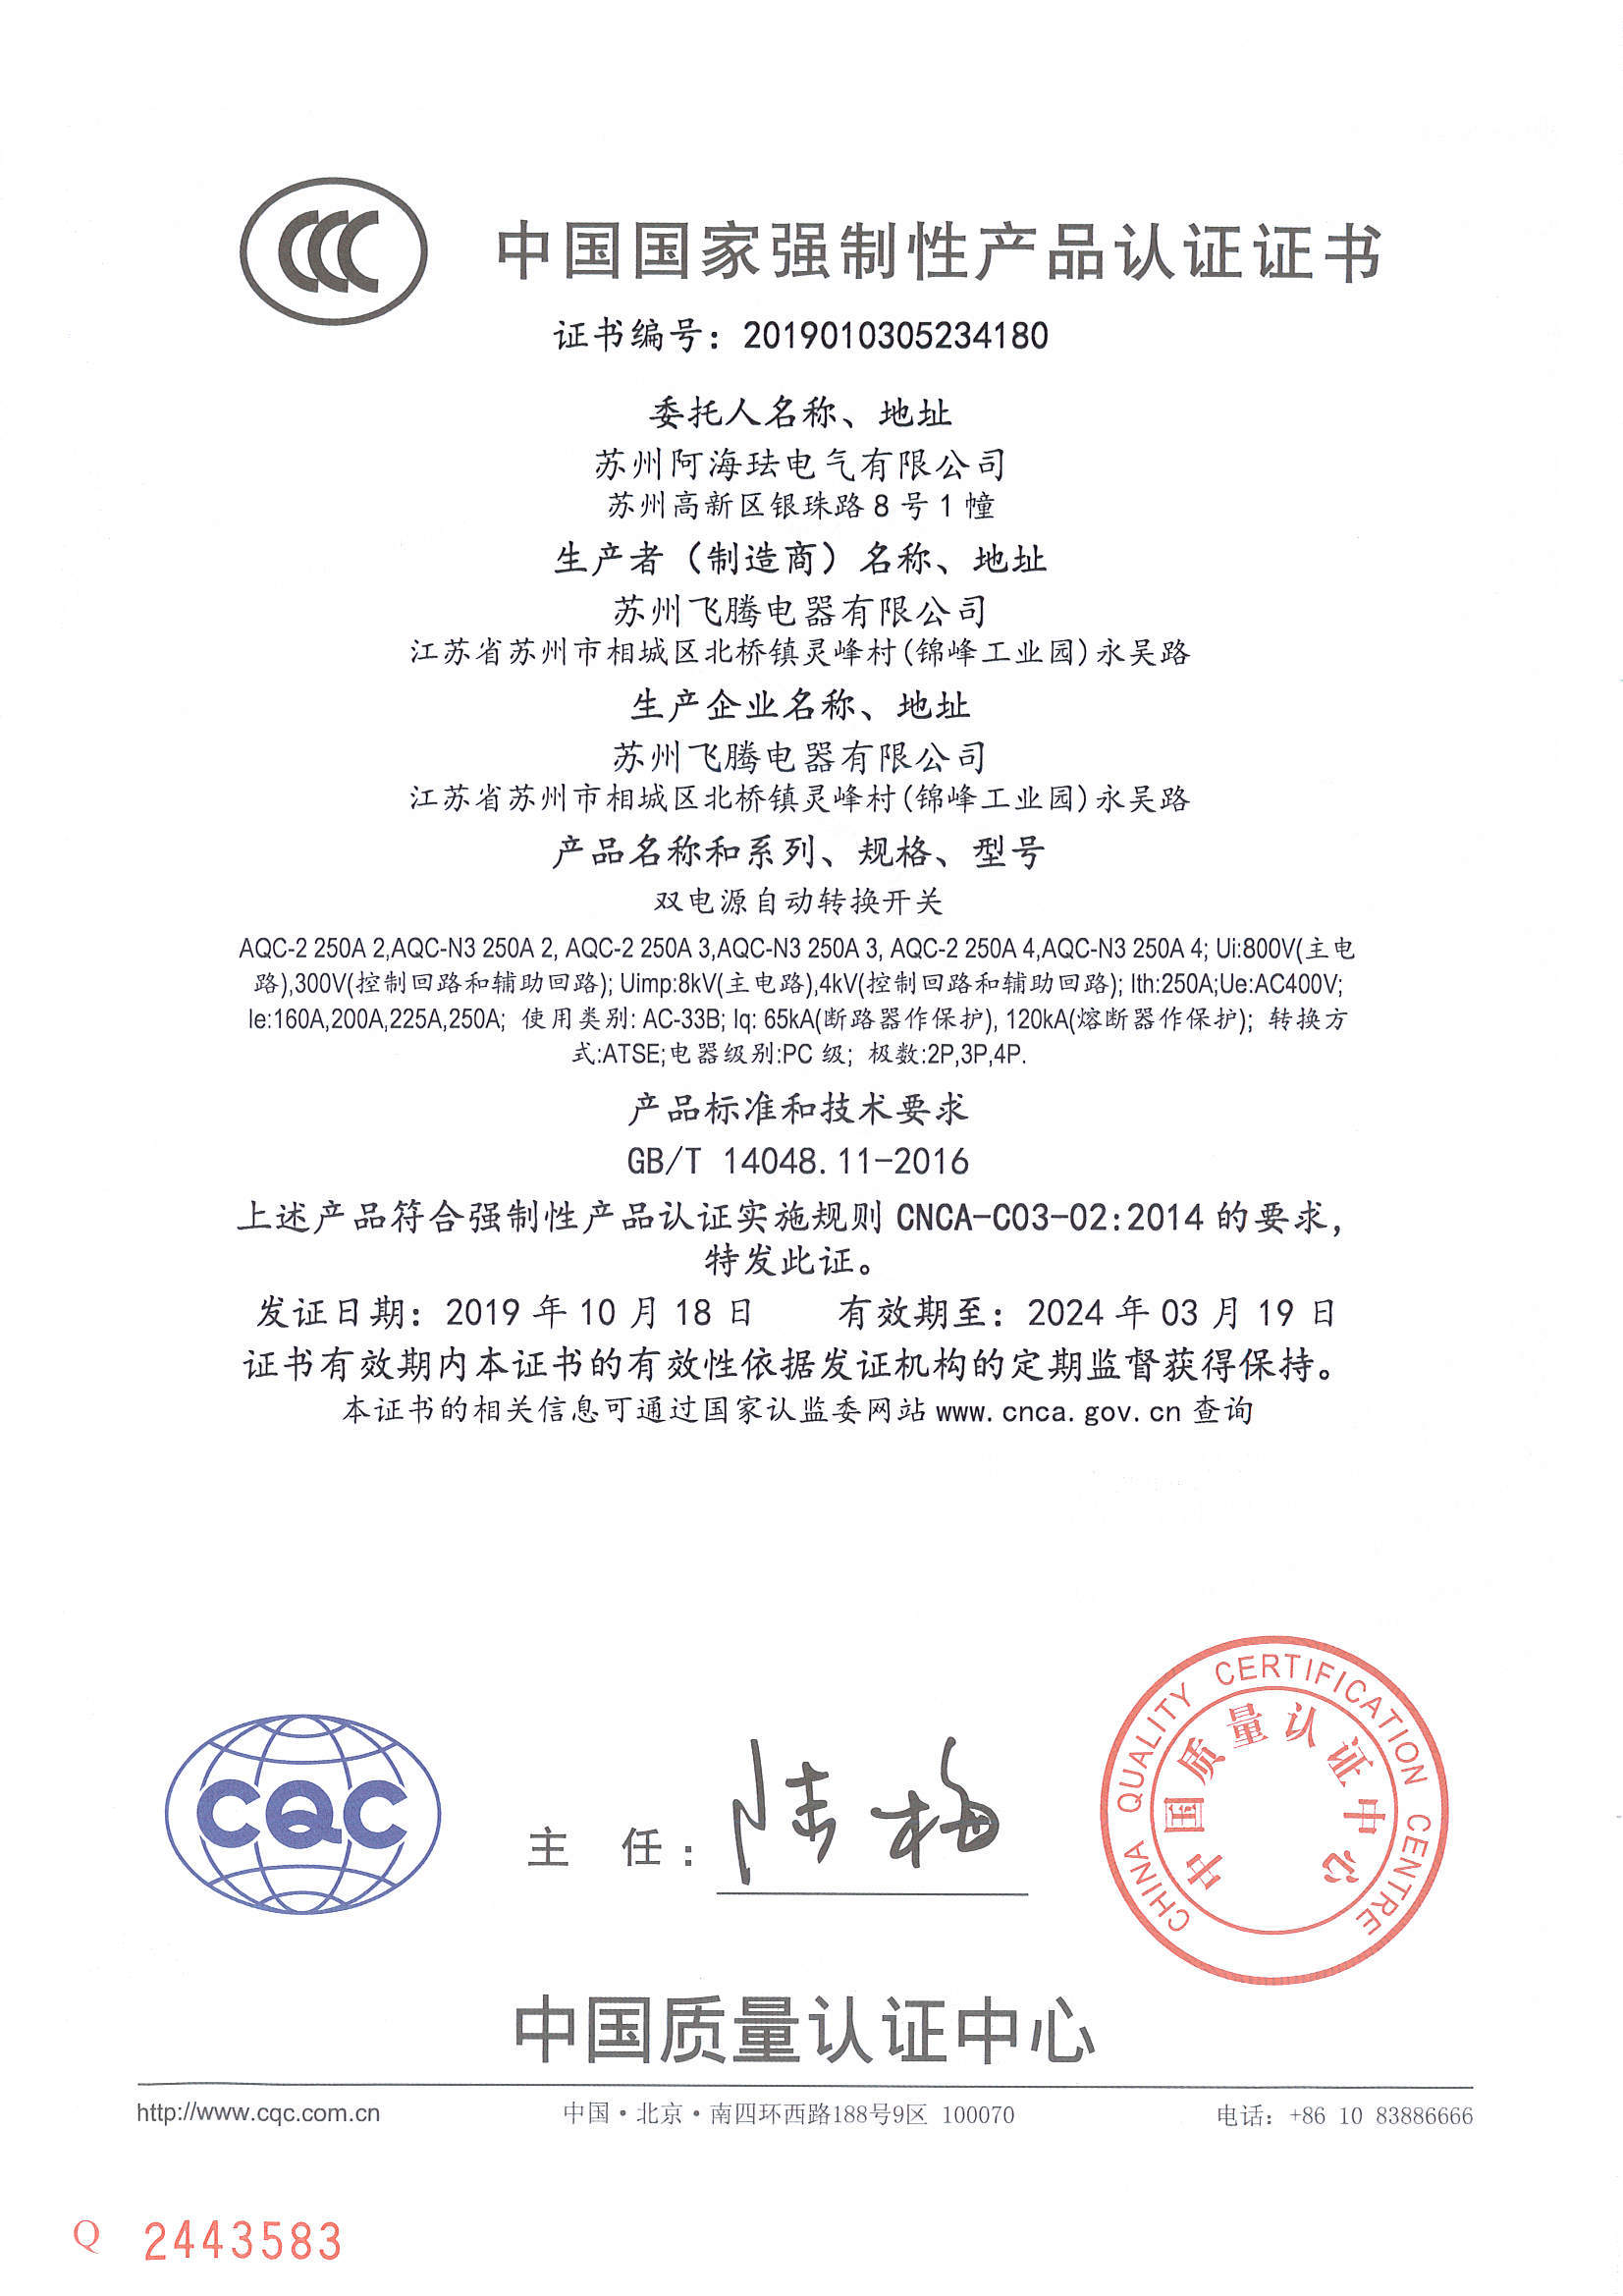 AQC250 CCC Certificate